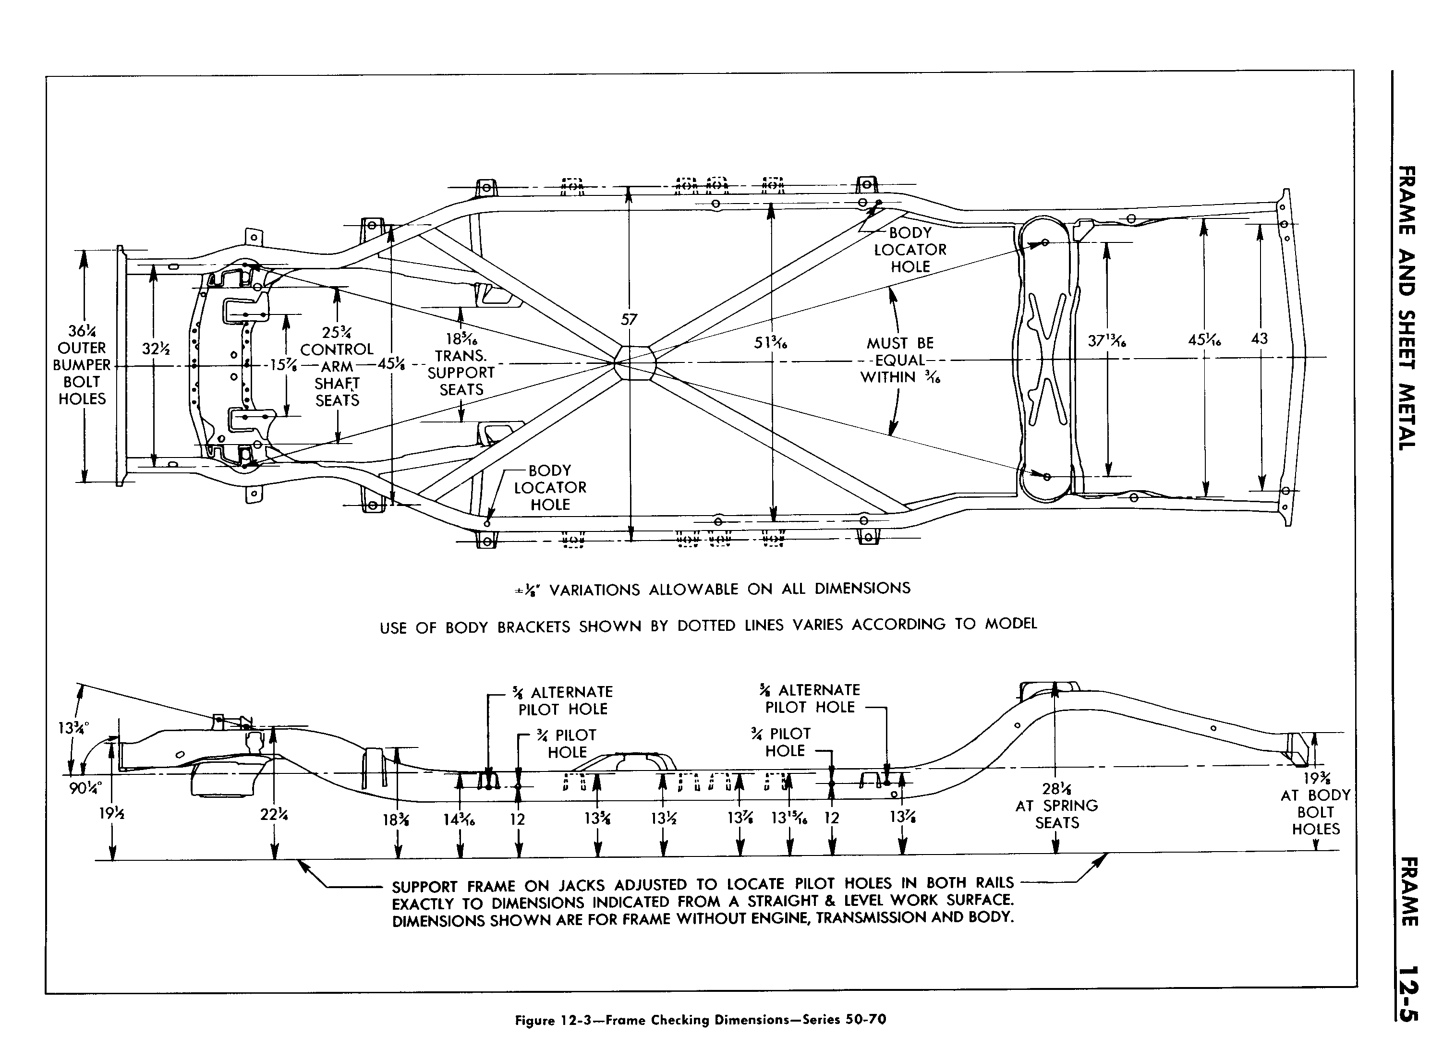 n_13 1957 Buick Shop Manual - Frame & Sheet Metal-005-005.jpg